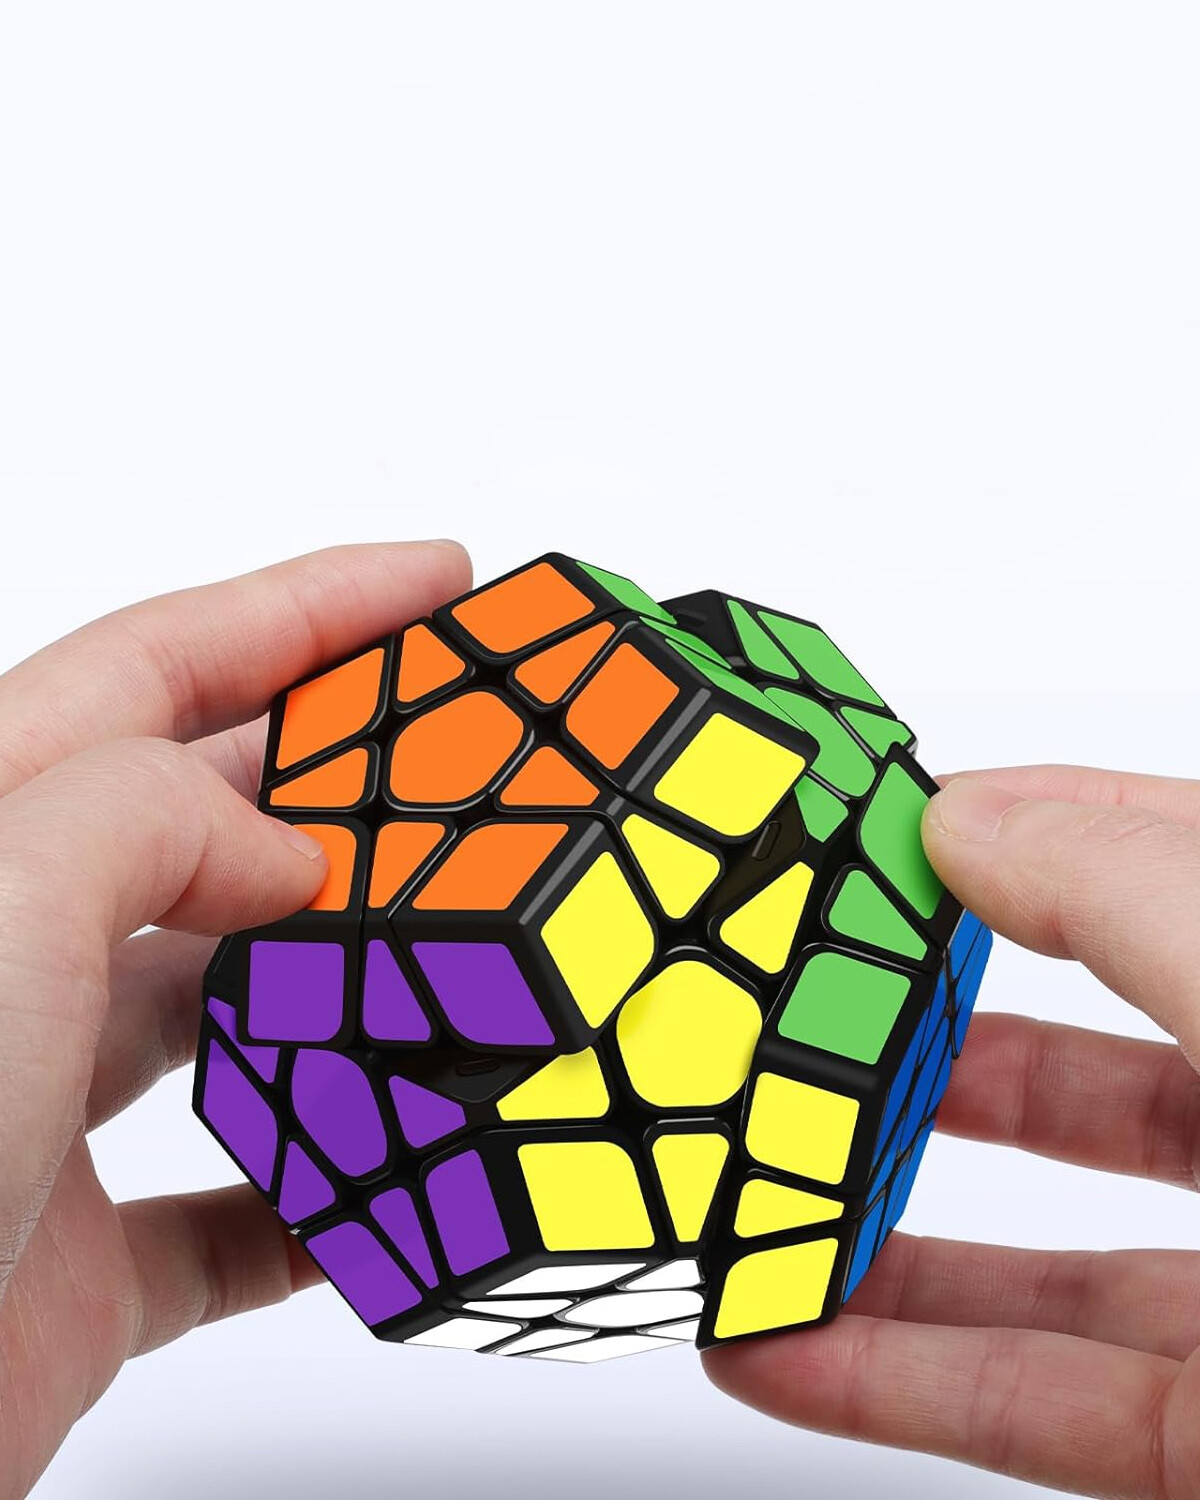 Kit de Limpieza Para Cubo Rubik